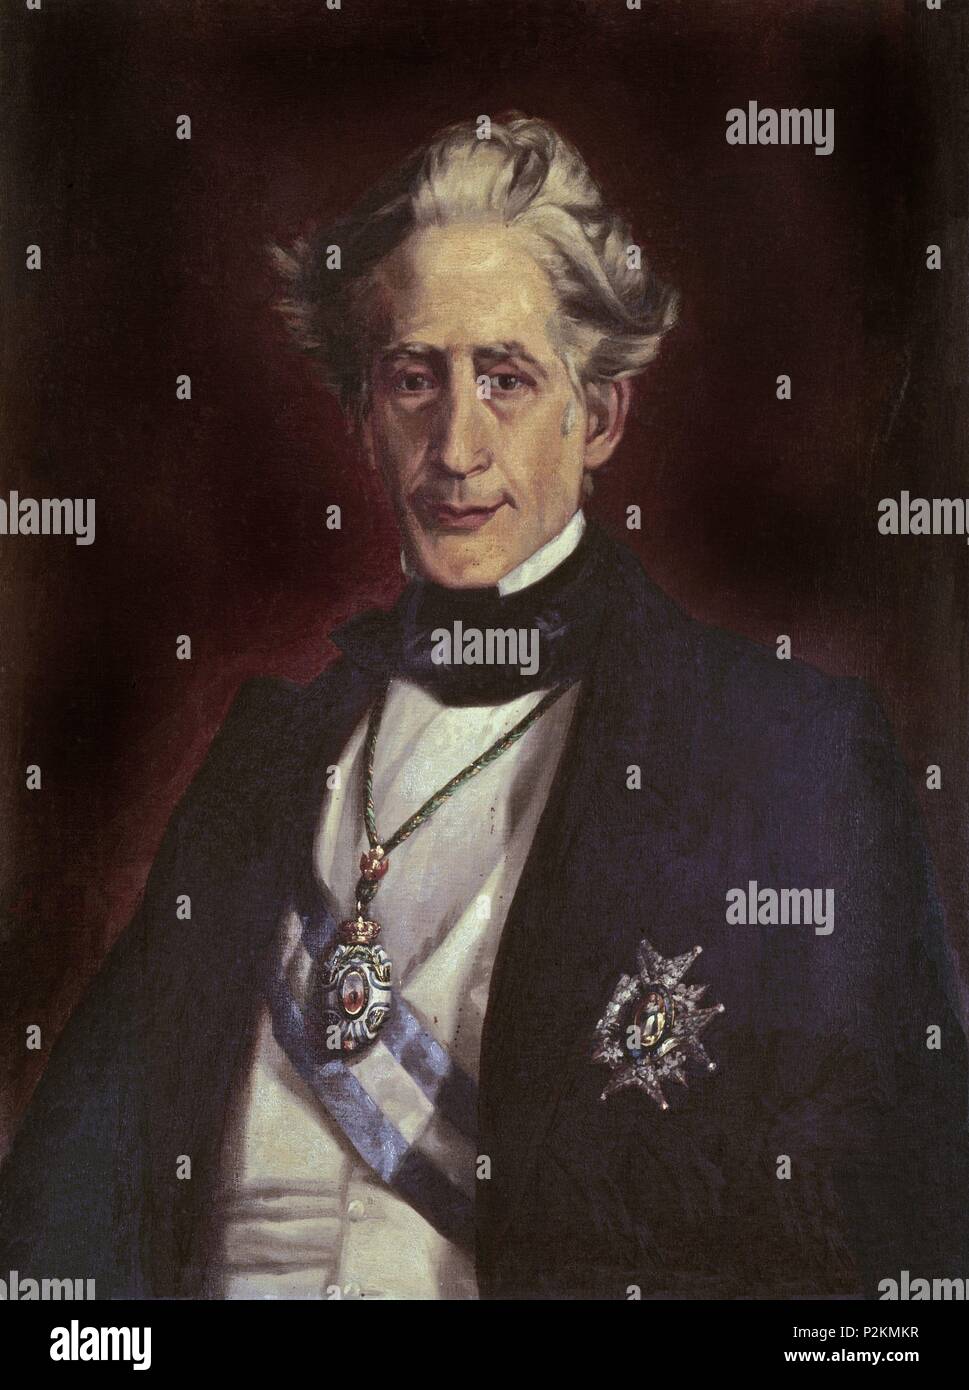 'Francisco Martínez de la Rosa', 19th century. Author: José María Galván Y Candela (1837-1899). Location: ATENEO-COLECCION, MADRID, SPAIN. Stock Photo